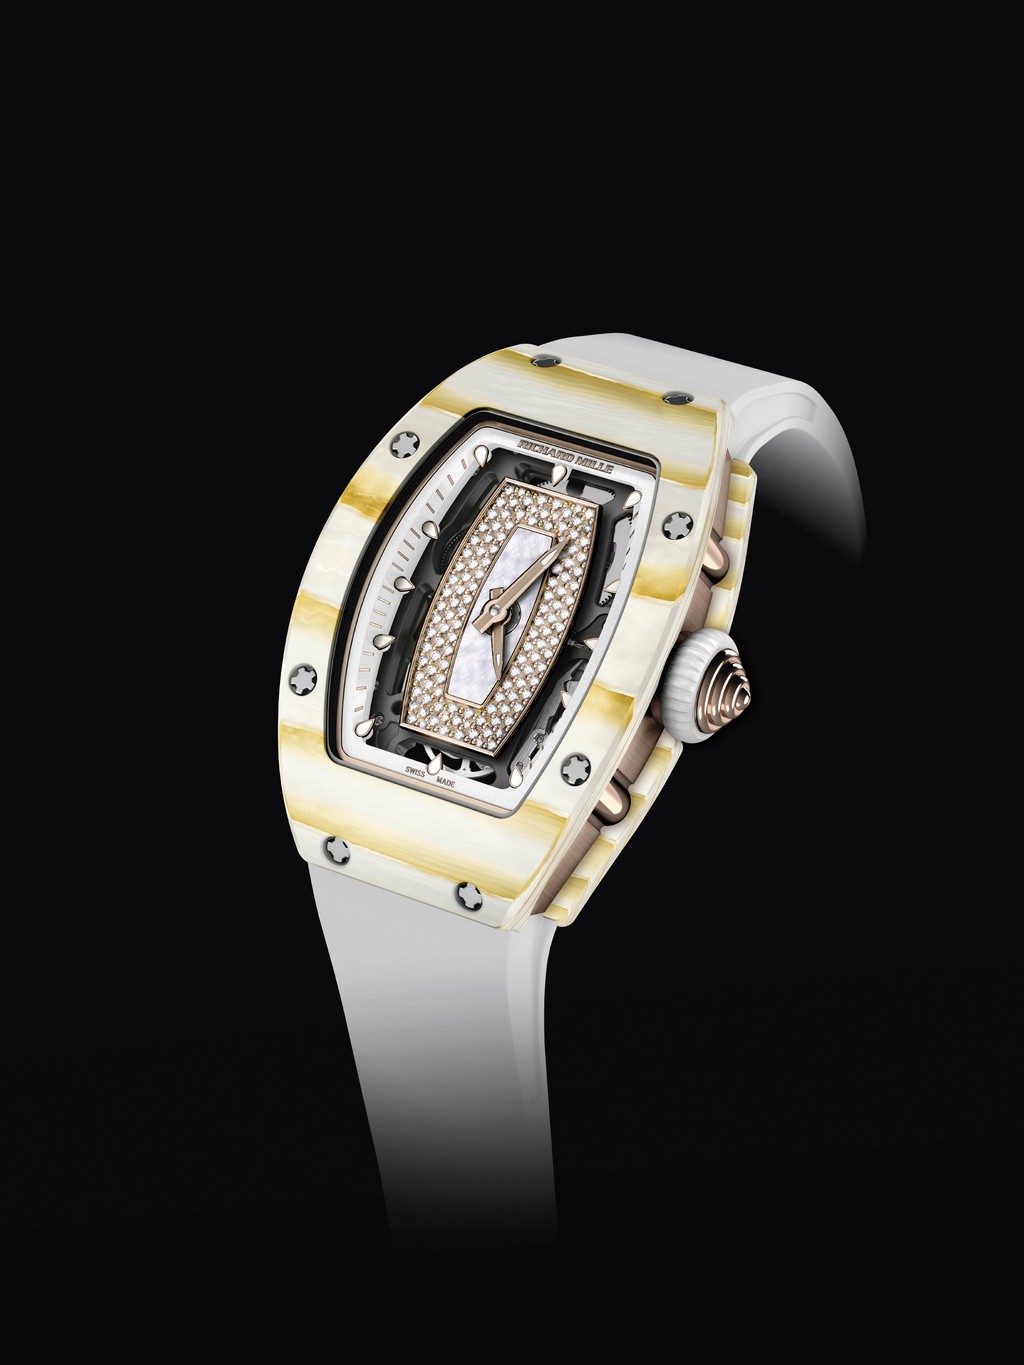 Richard Mille orologi: i modelli femminili realizzati con quarzo e oro NTPT